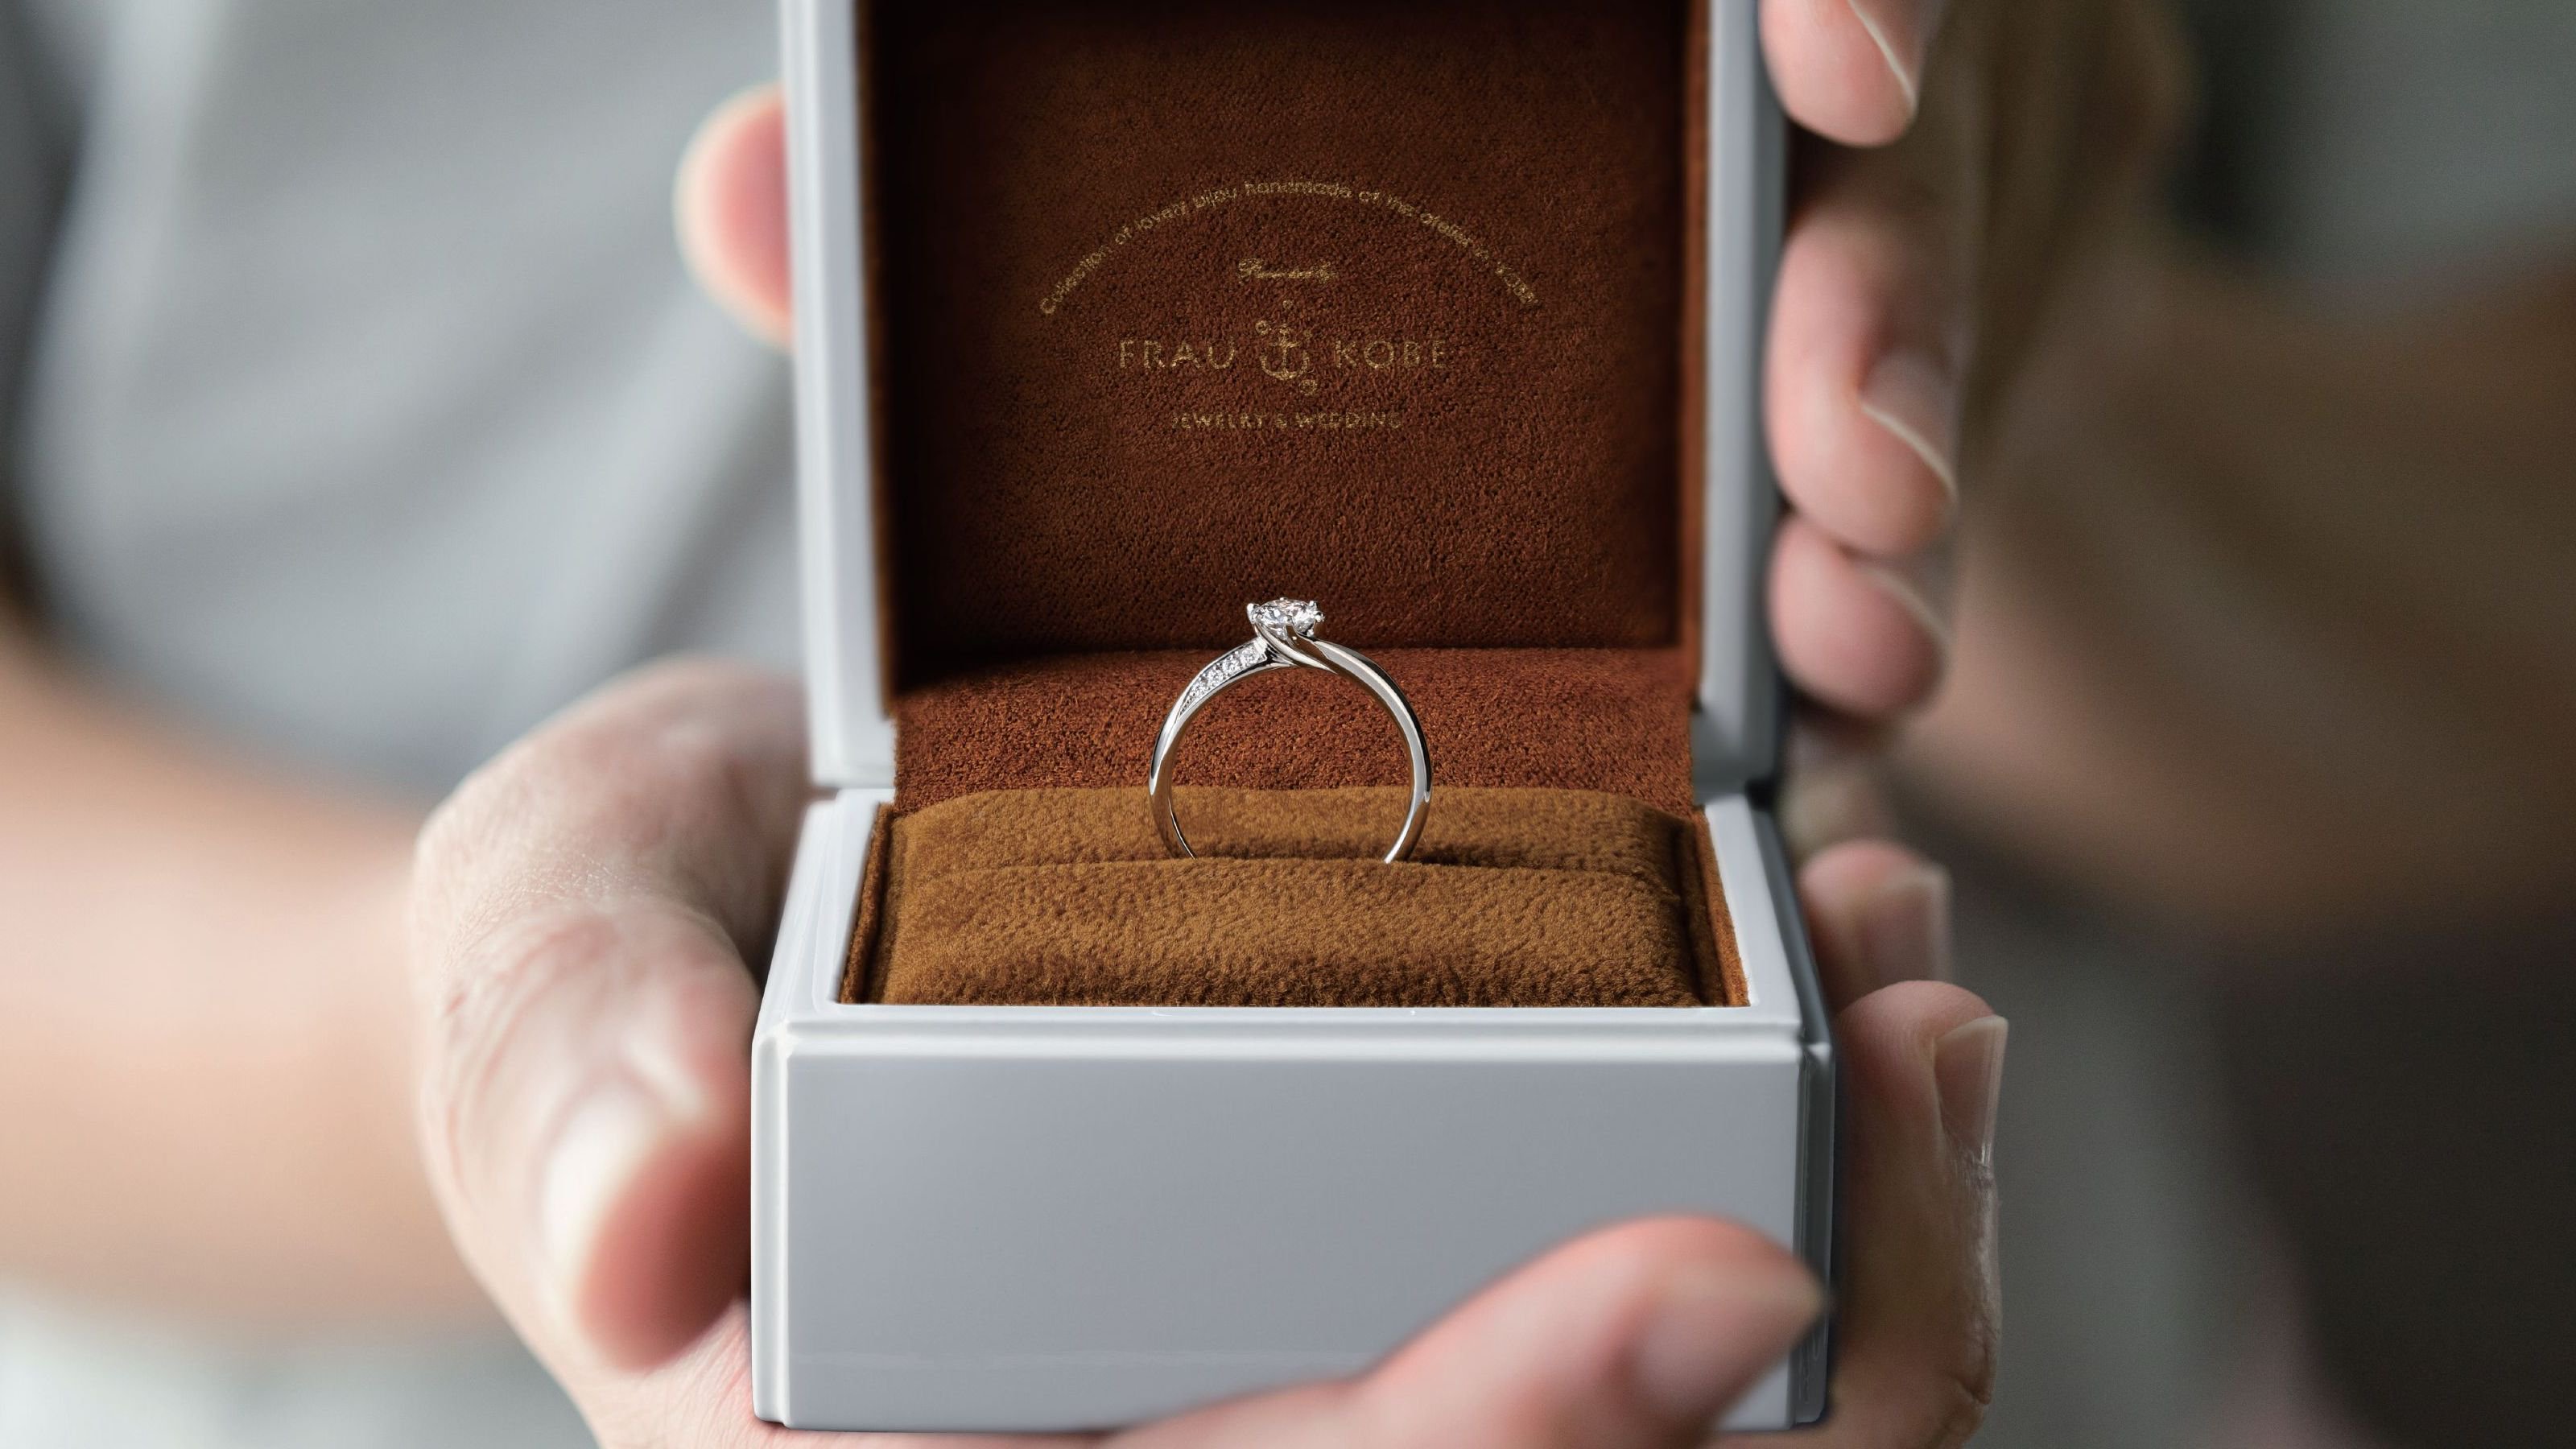 お急ぎ発送・即日発送できるエンゲージ・婚約指輪のフラウコウベ公式通販サイトFRAU KOBE on-line shop -